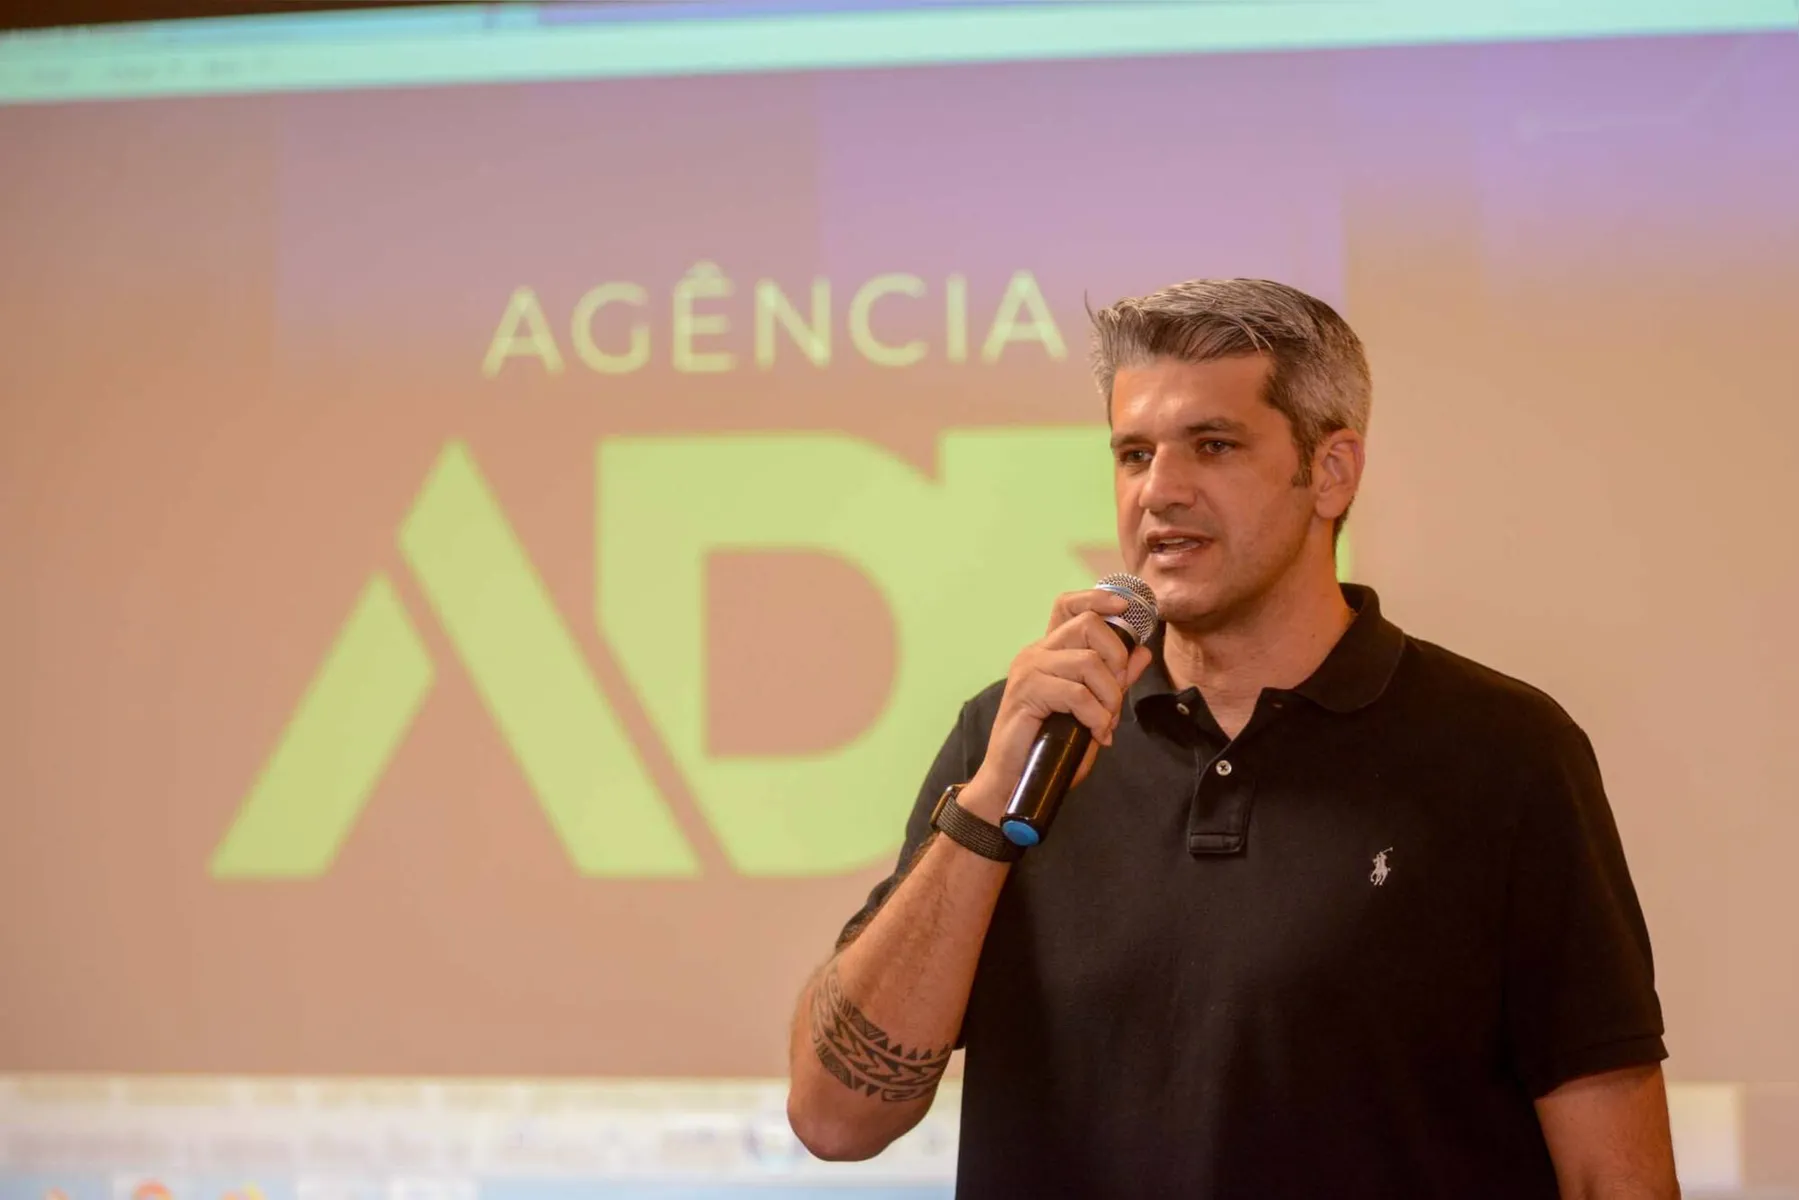 Sócio da Agência ADR, consagrada por seu trabalho com influenciadores, o empresário Douglas Lopes falou, na ocasião